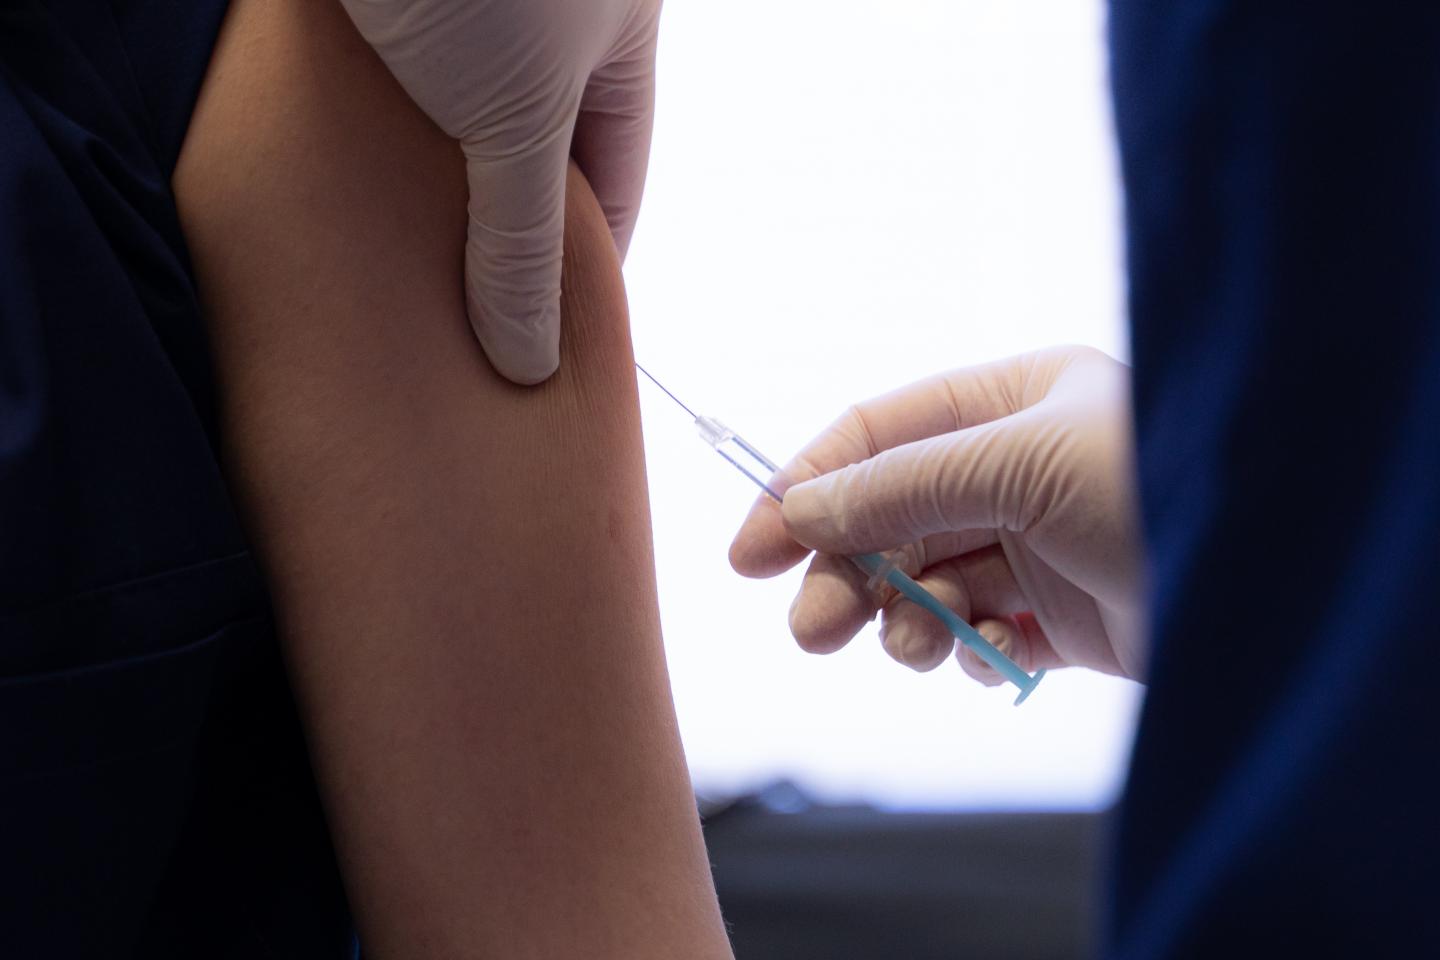 Imunizohen mbi 95% e fëmijëve të Prishtinës, atyre do t’u shtohen edhe 3 vaksina